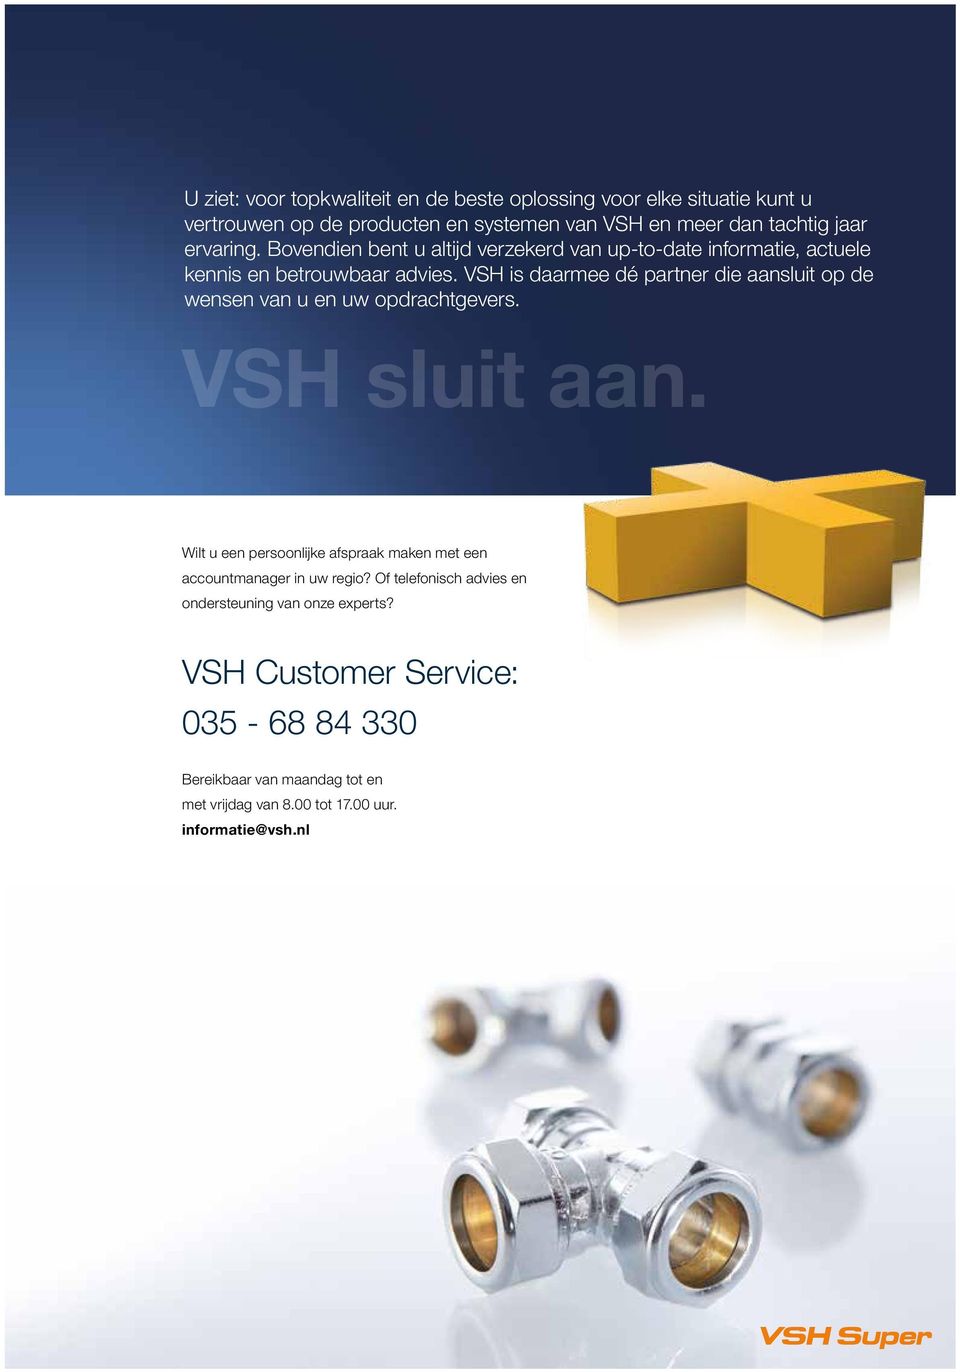 VSH is daarmee dé partner die aansluit op de wensen van u en uw opdrachtgevers. VSH sluit aan.